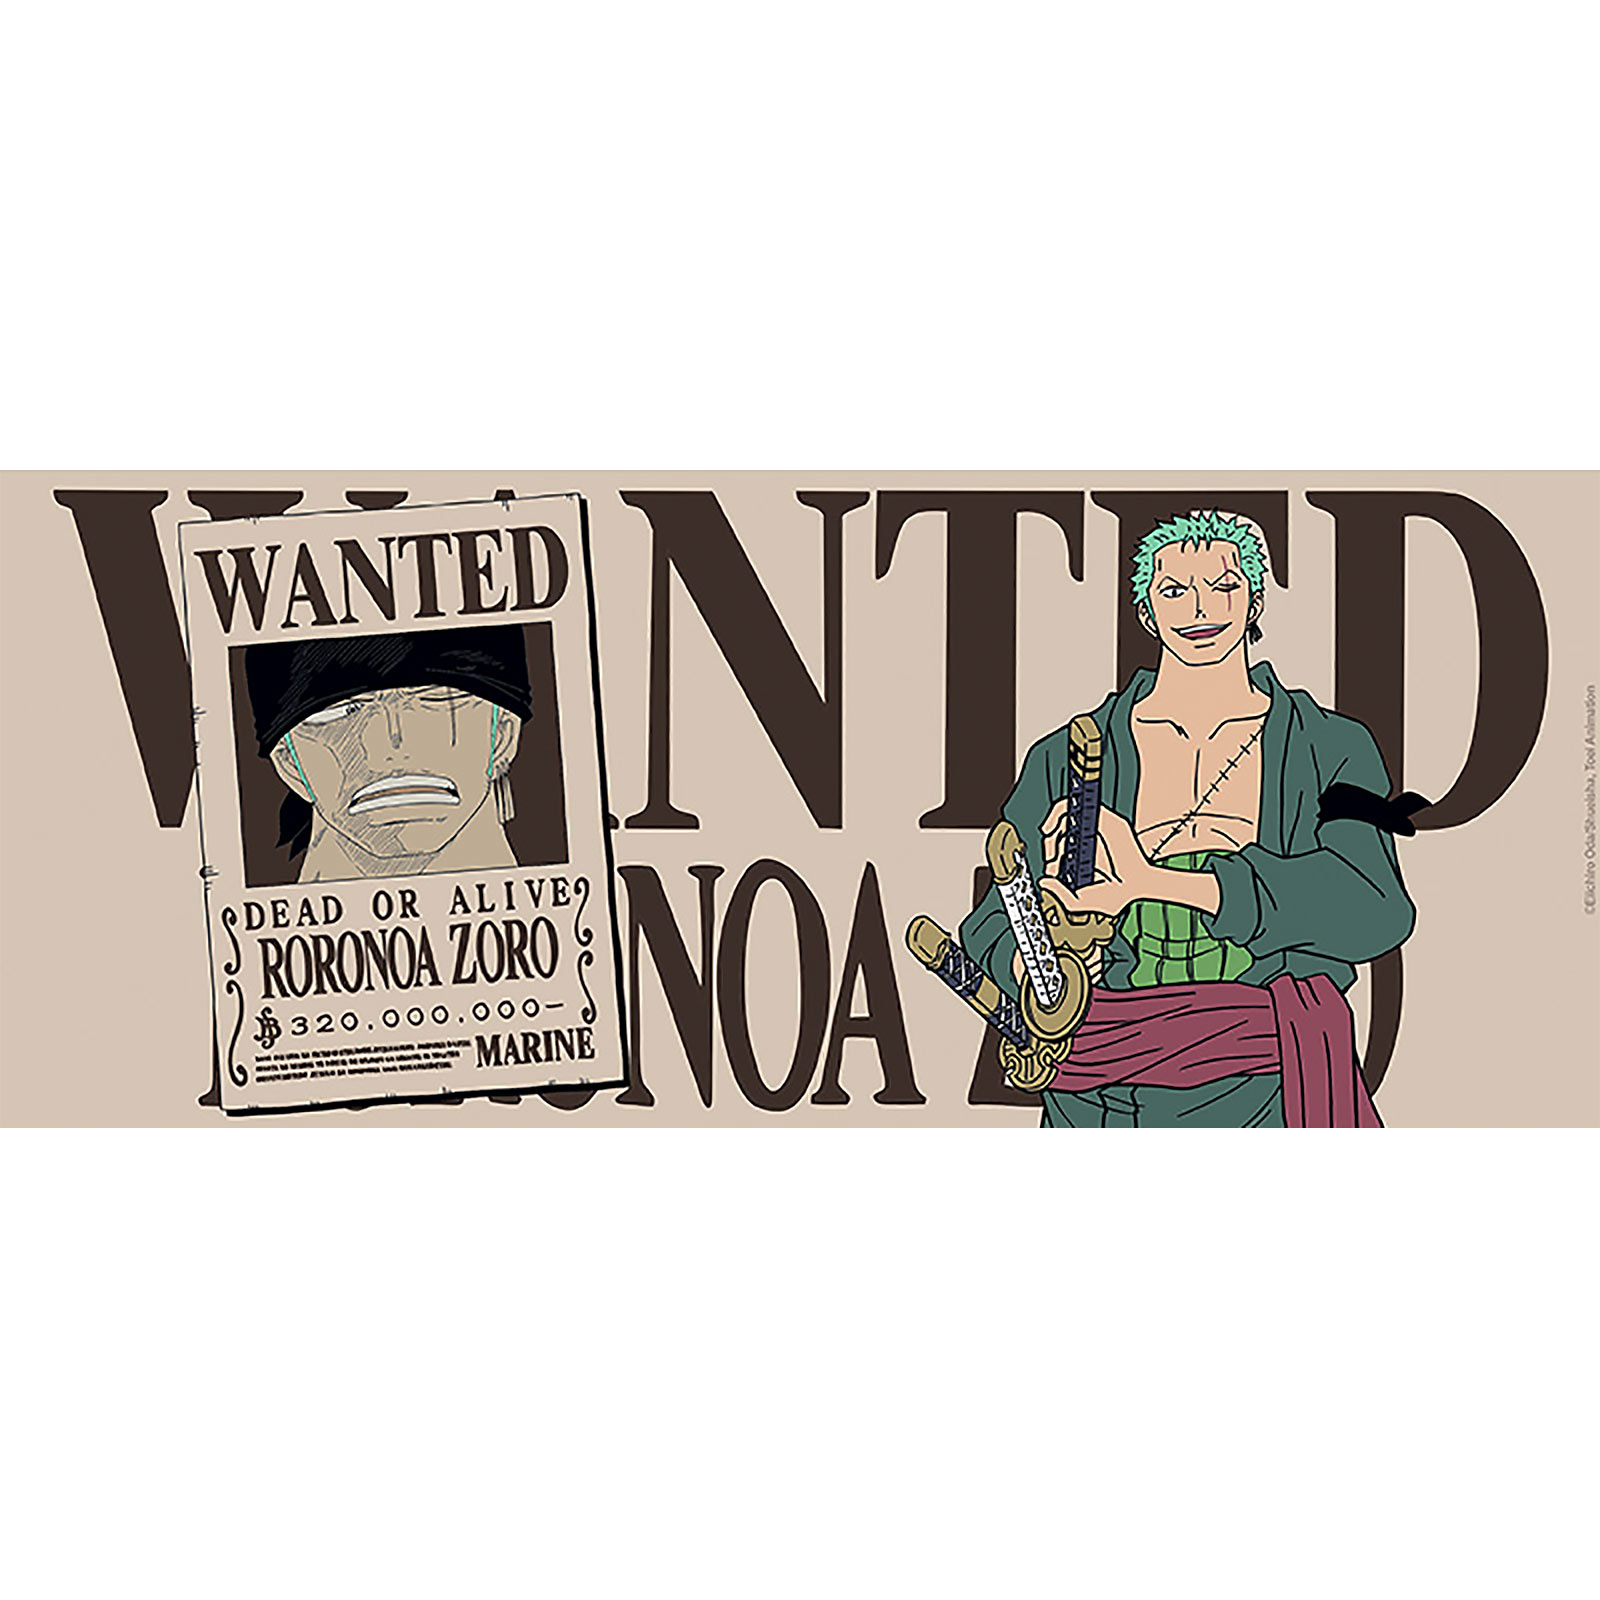 One Piece - Wanted Zoro Mok